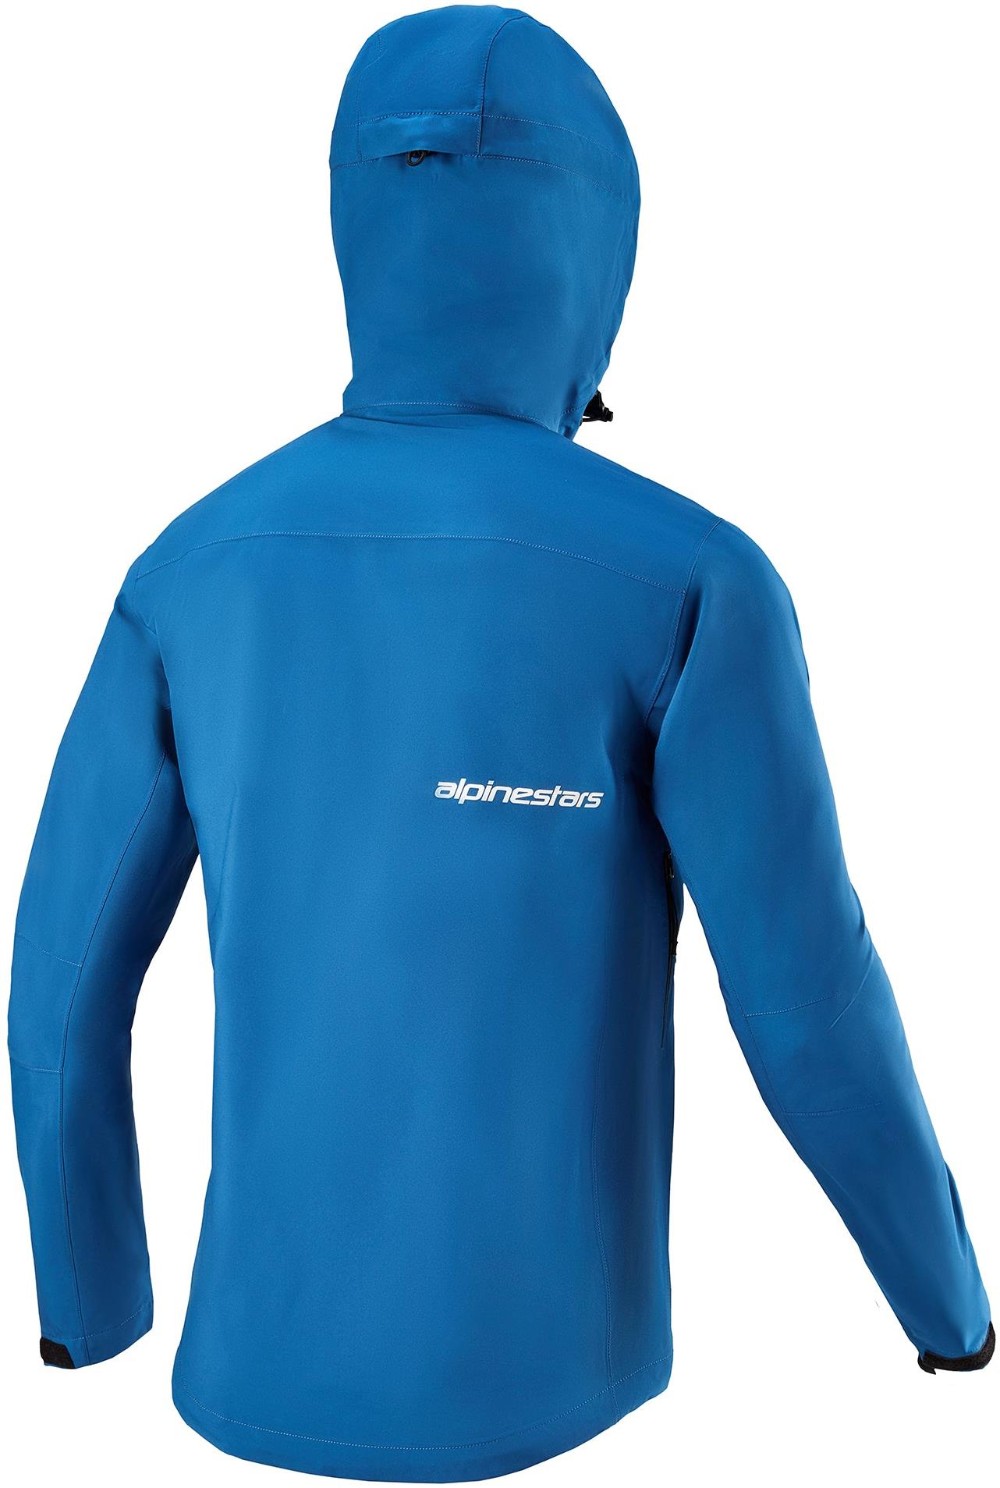 Sierra Waterproof Jacket image 1